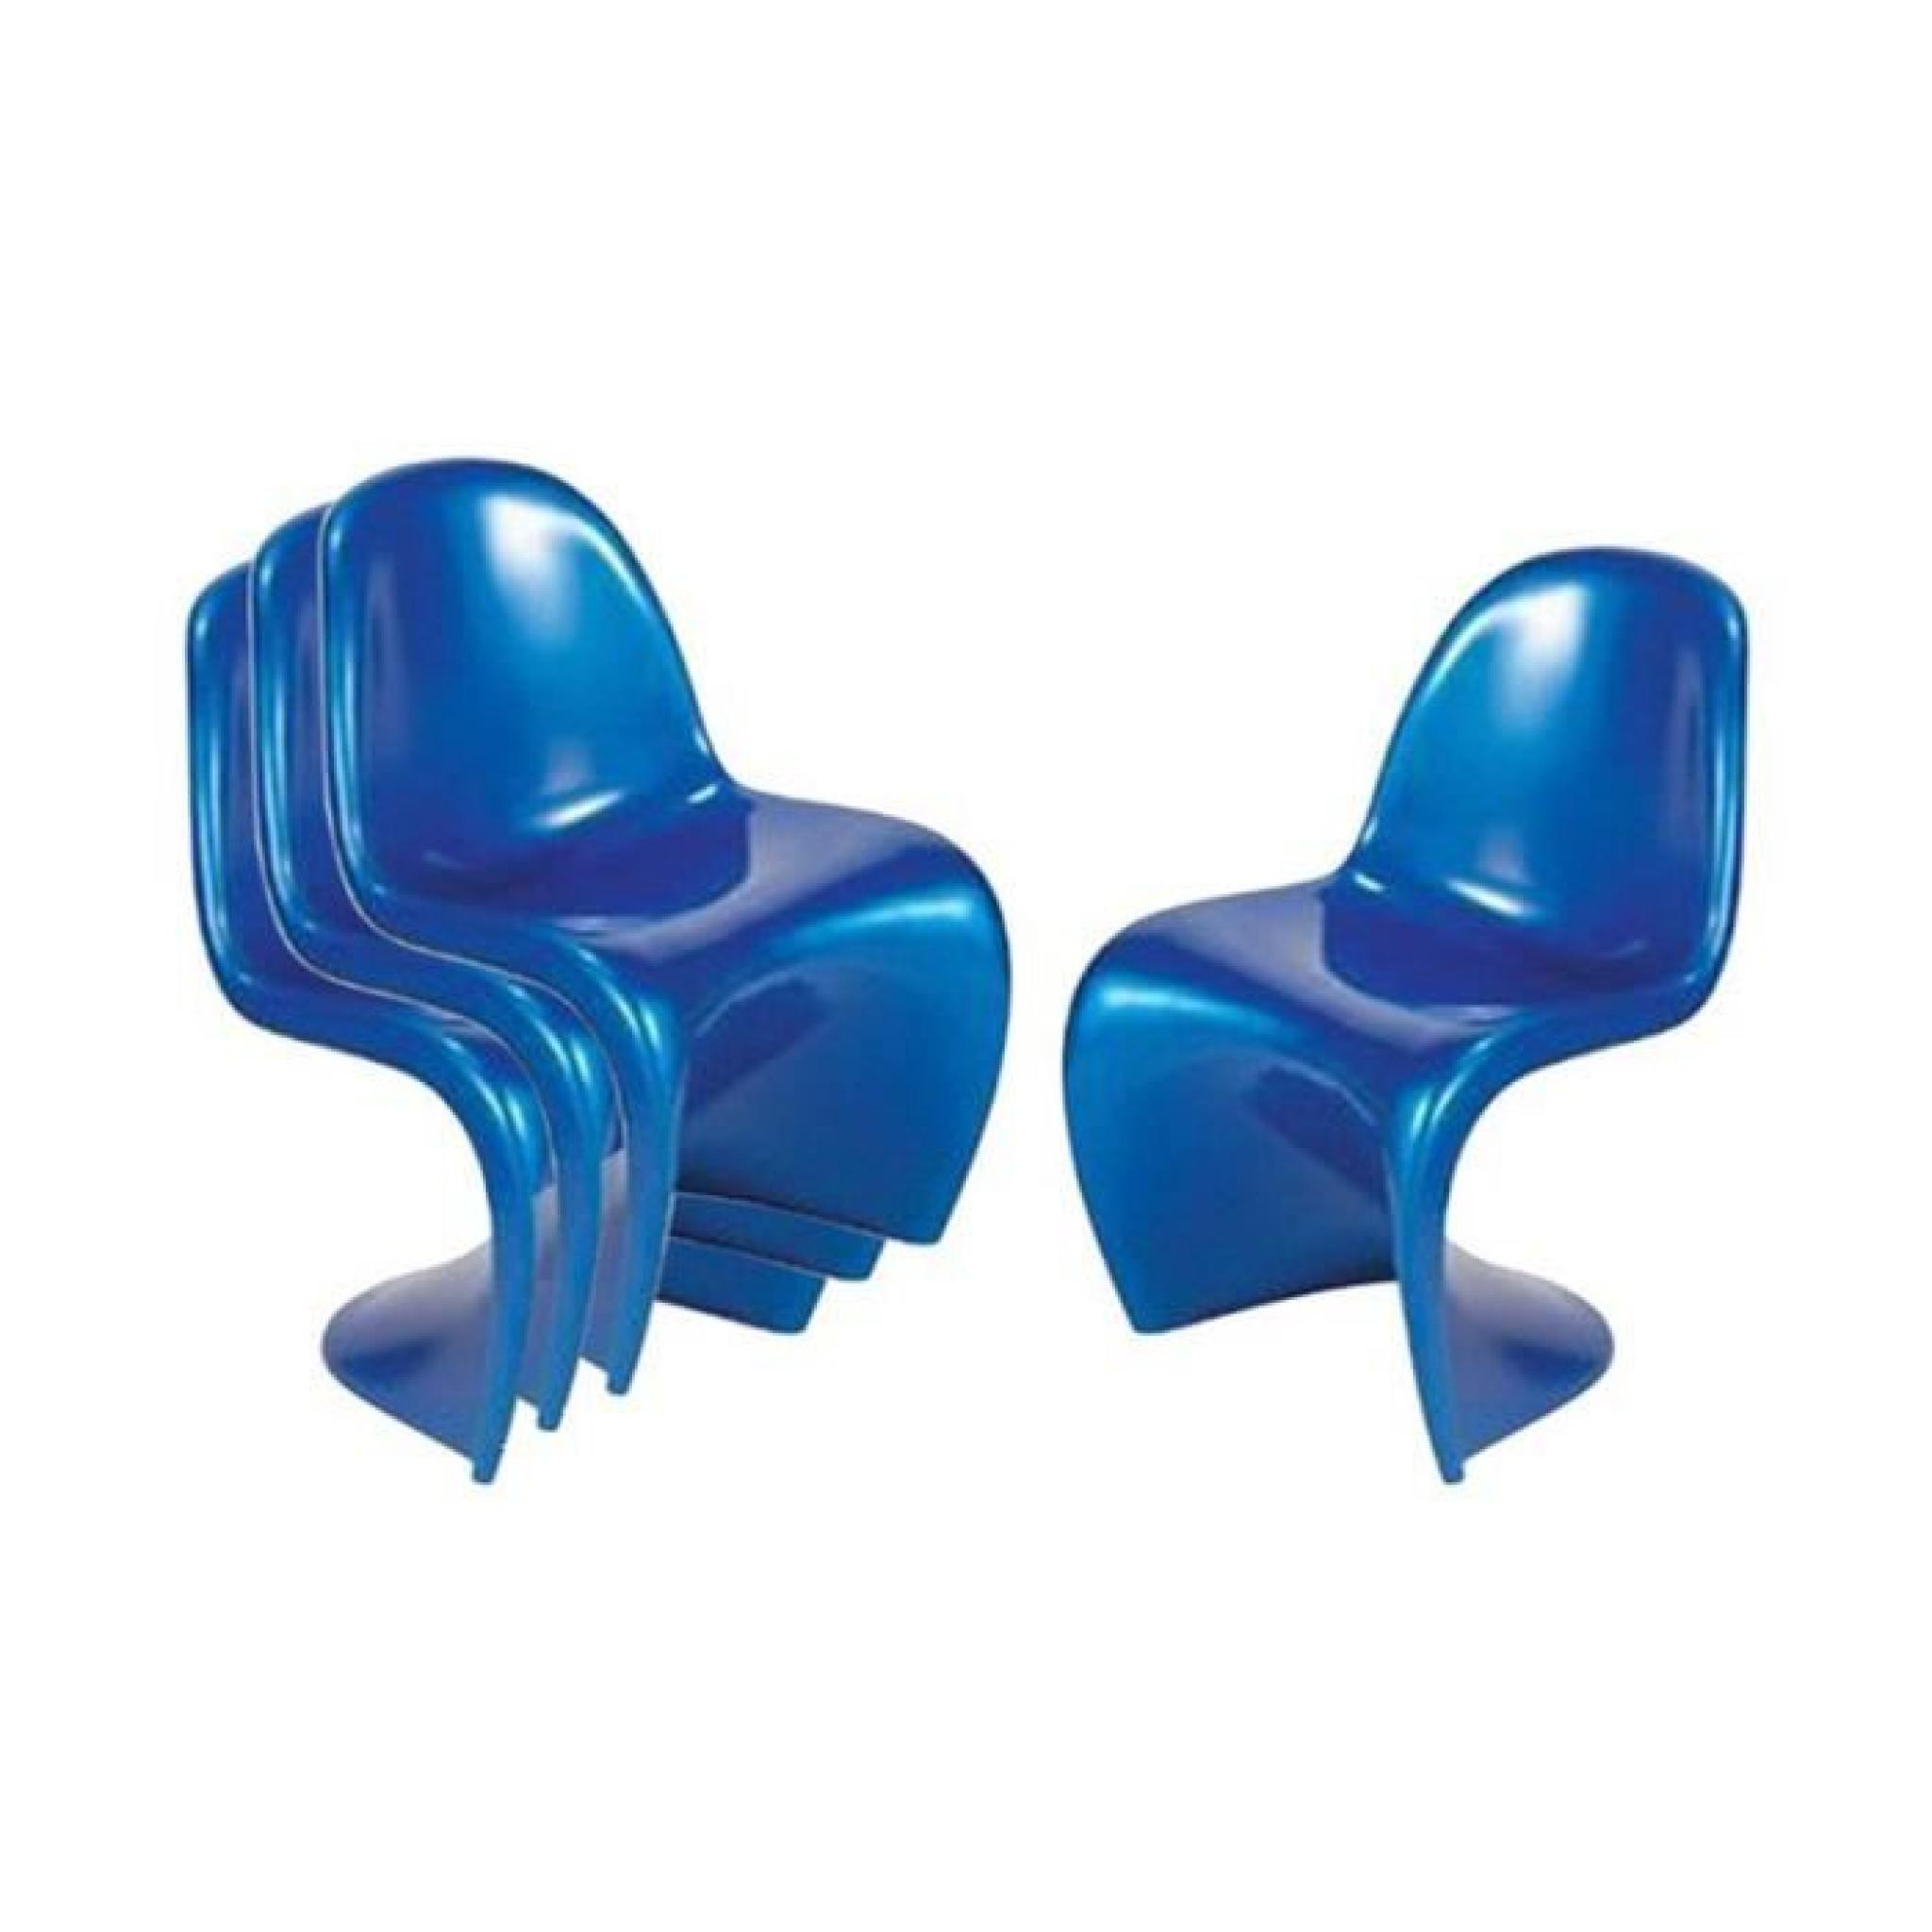 GHOST chaise enfants bleue empilable très résis… pas cher